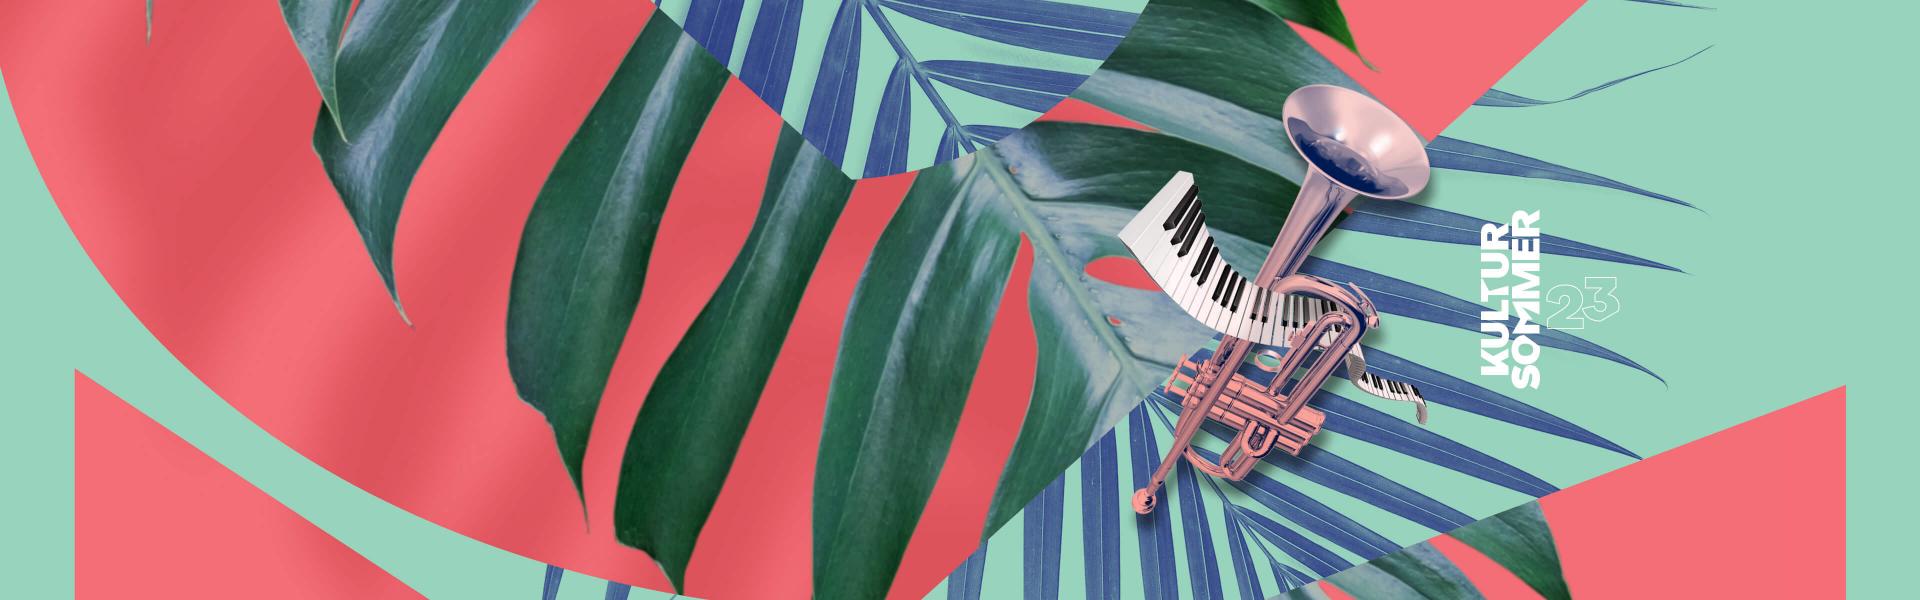 Farbige Grafik mit Blättern, Klaviertastatur und Trompete.